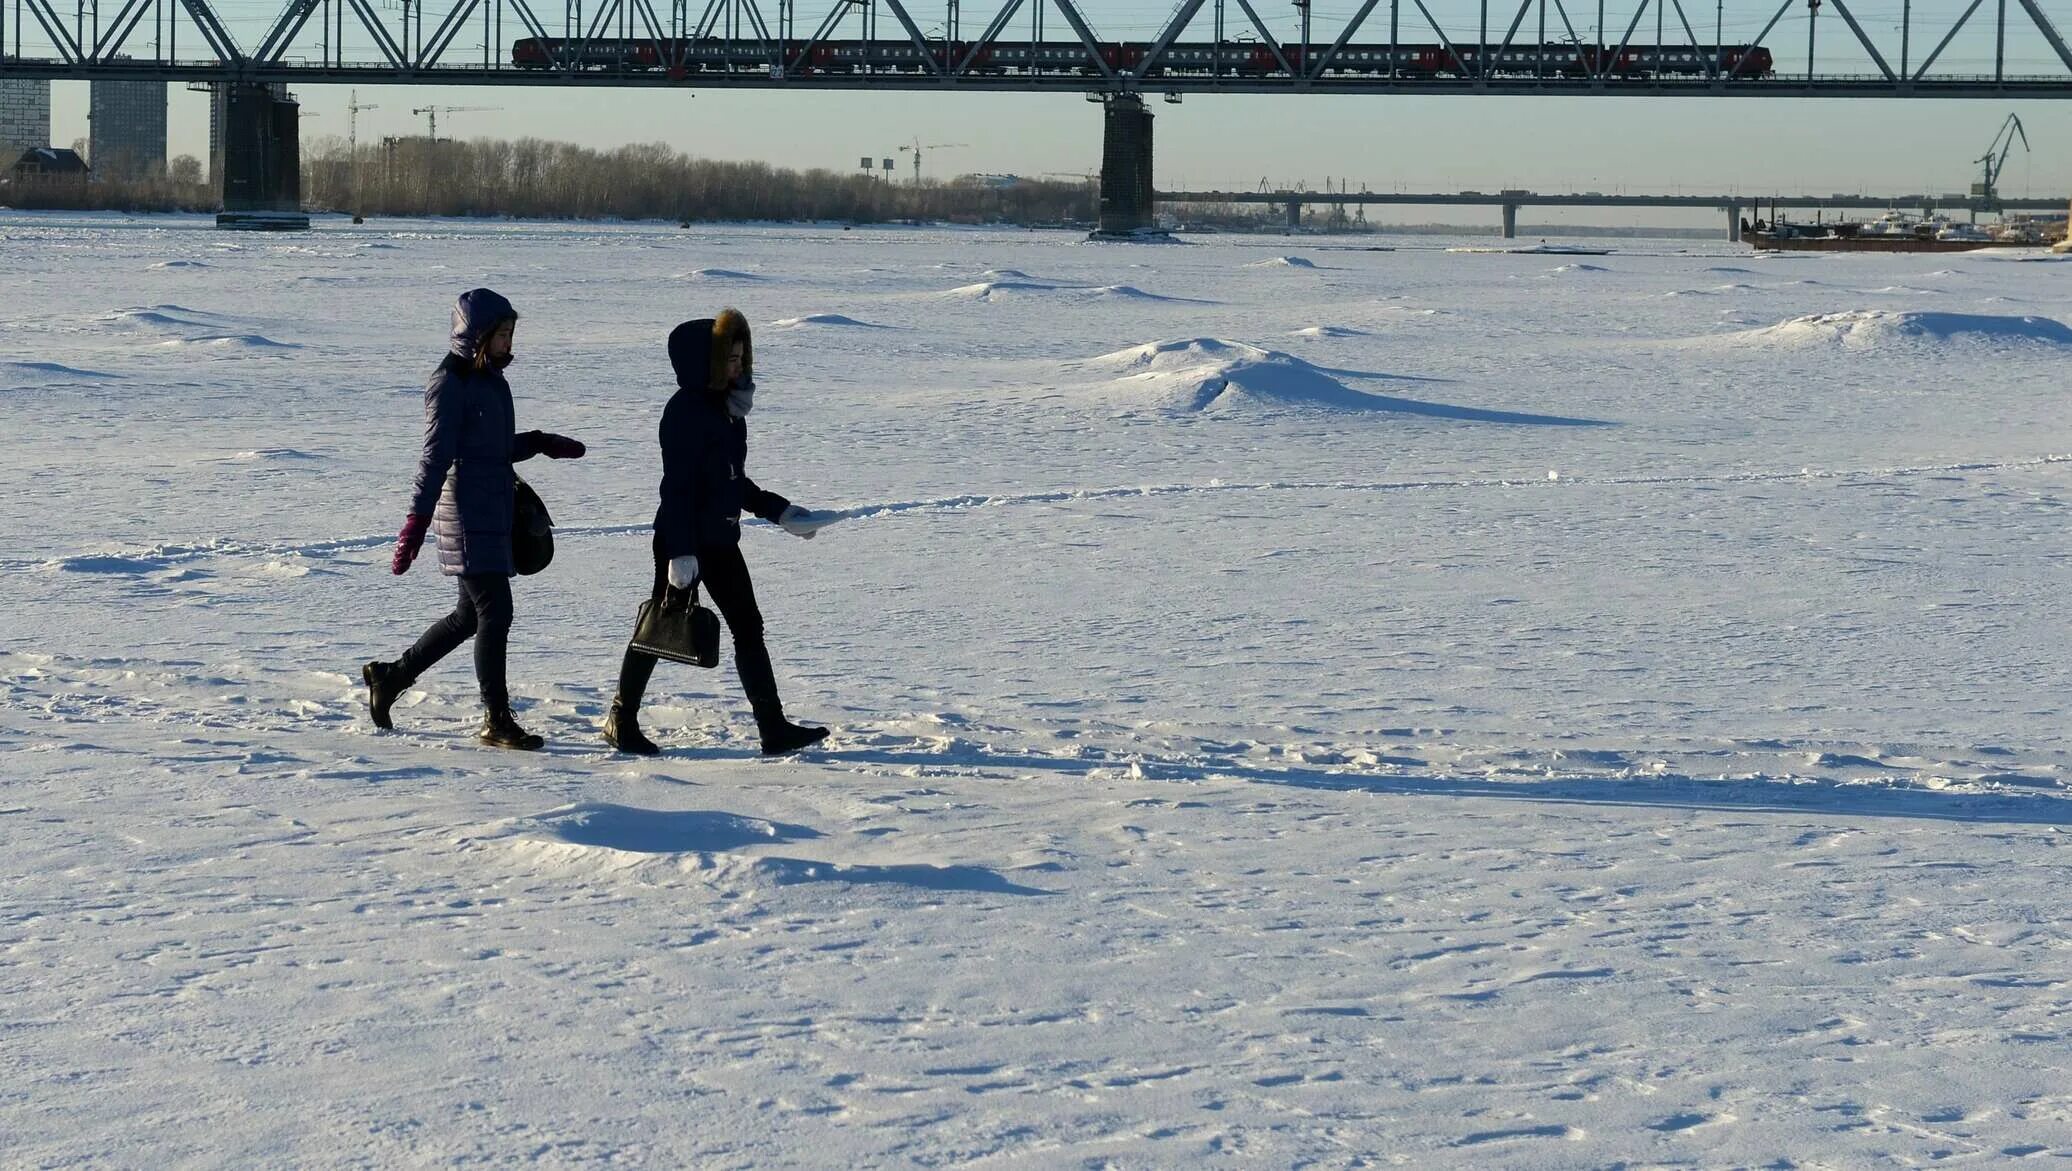 Переправа по льду. Зимняя переправа через реку. Обь зимой. Переправа через лед.